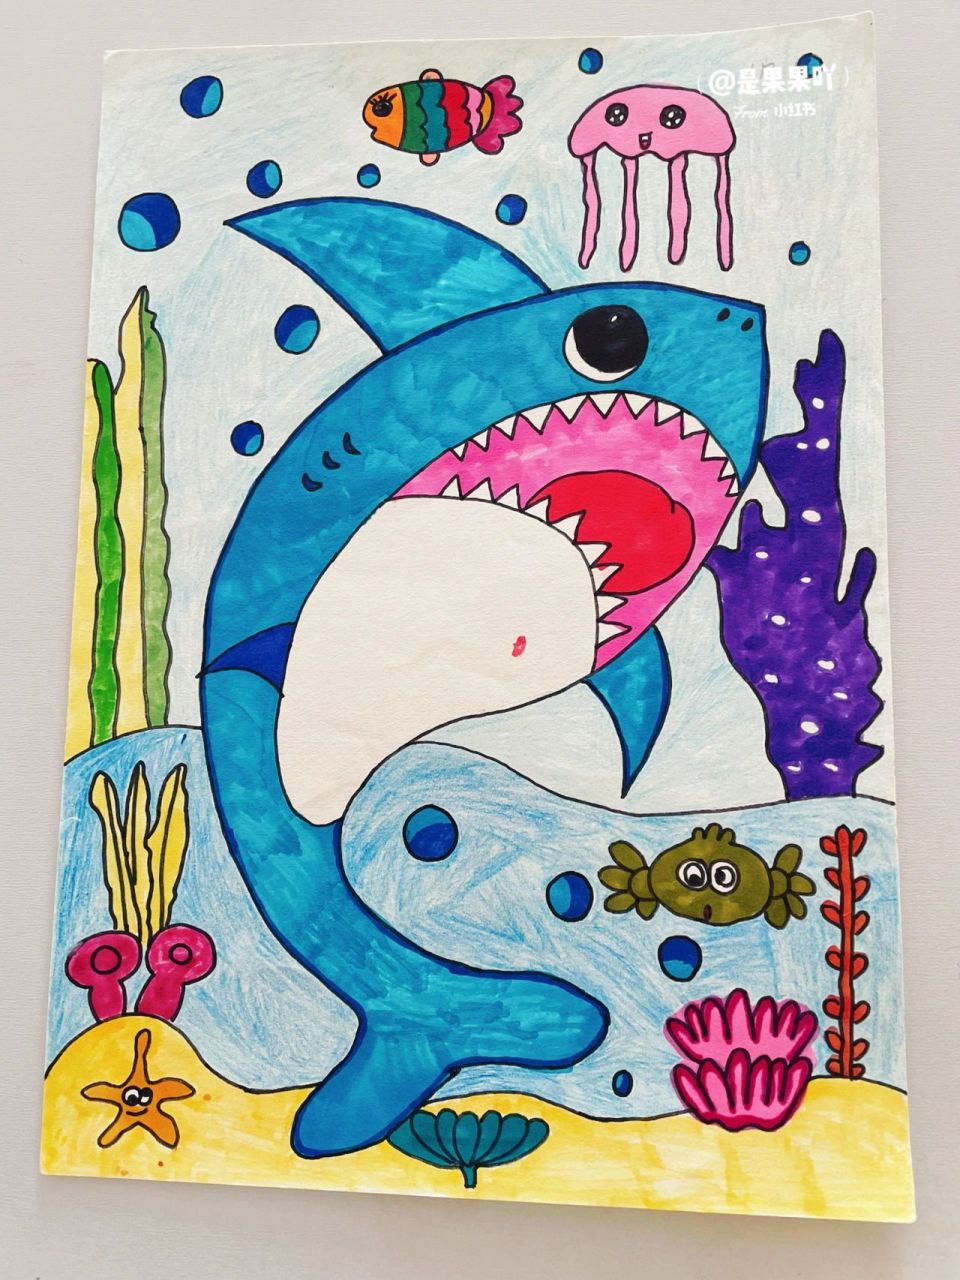 鲨鱼简笔画 彩色图片